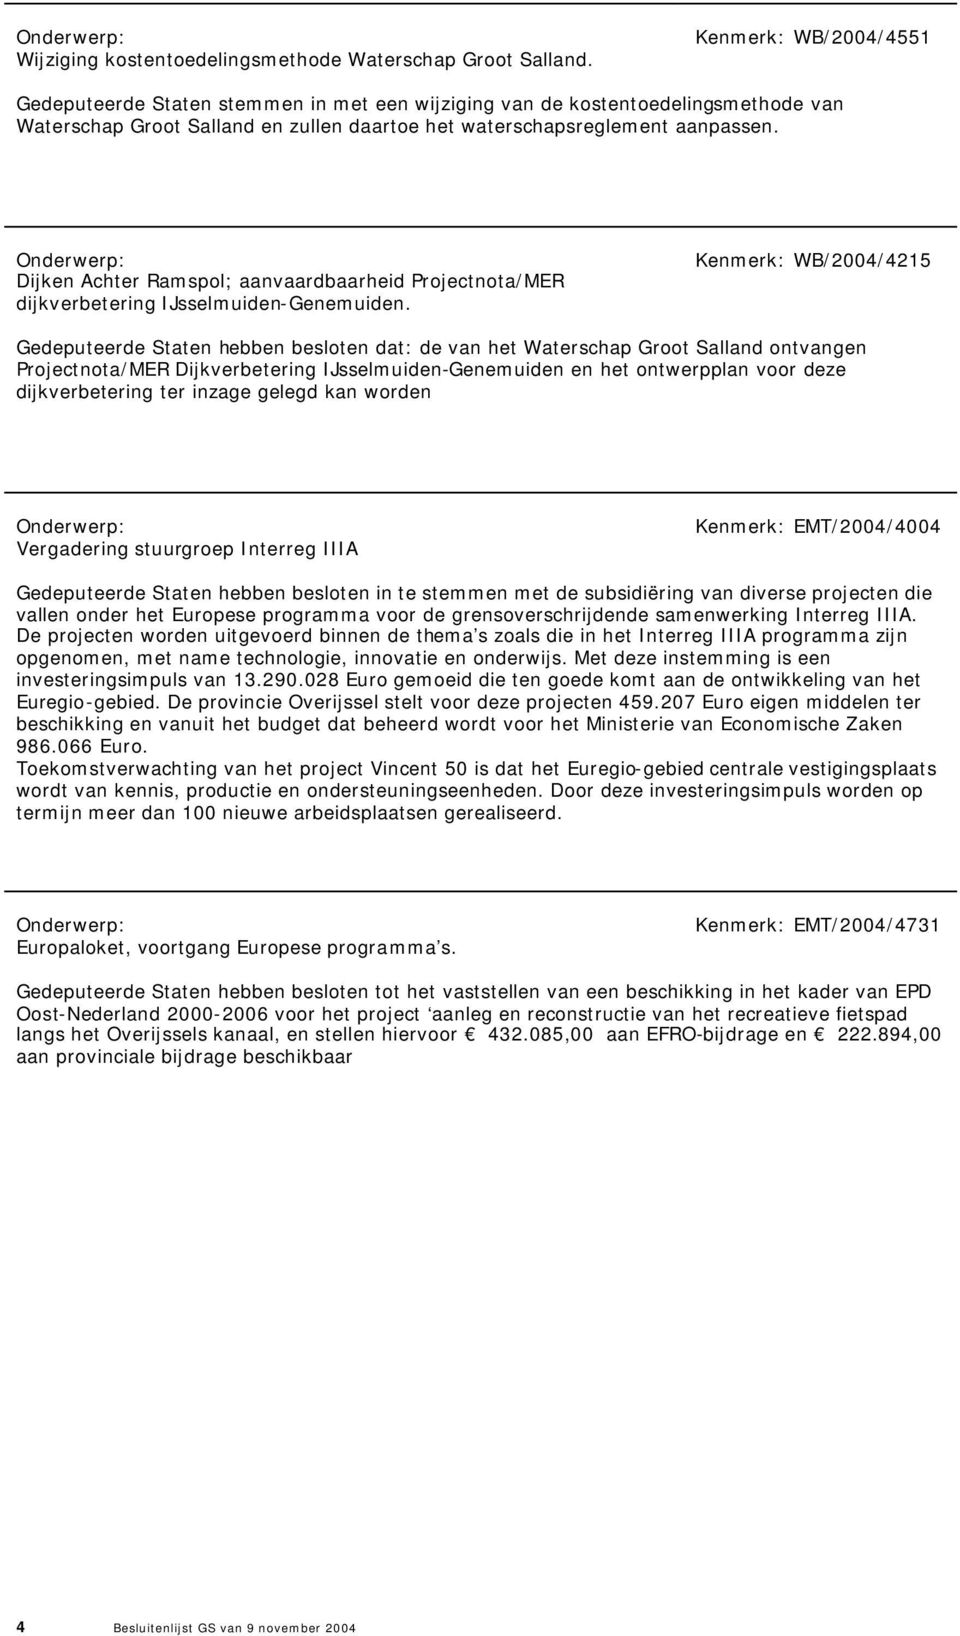 Dijken Achter Ramspol; aanvaardbaarheid Projectnota/MER dijkverbetering IJsselmuiden-Genemuiden.